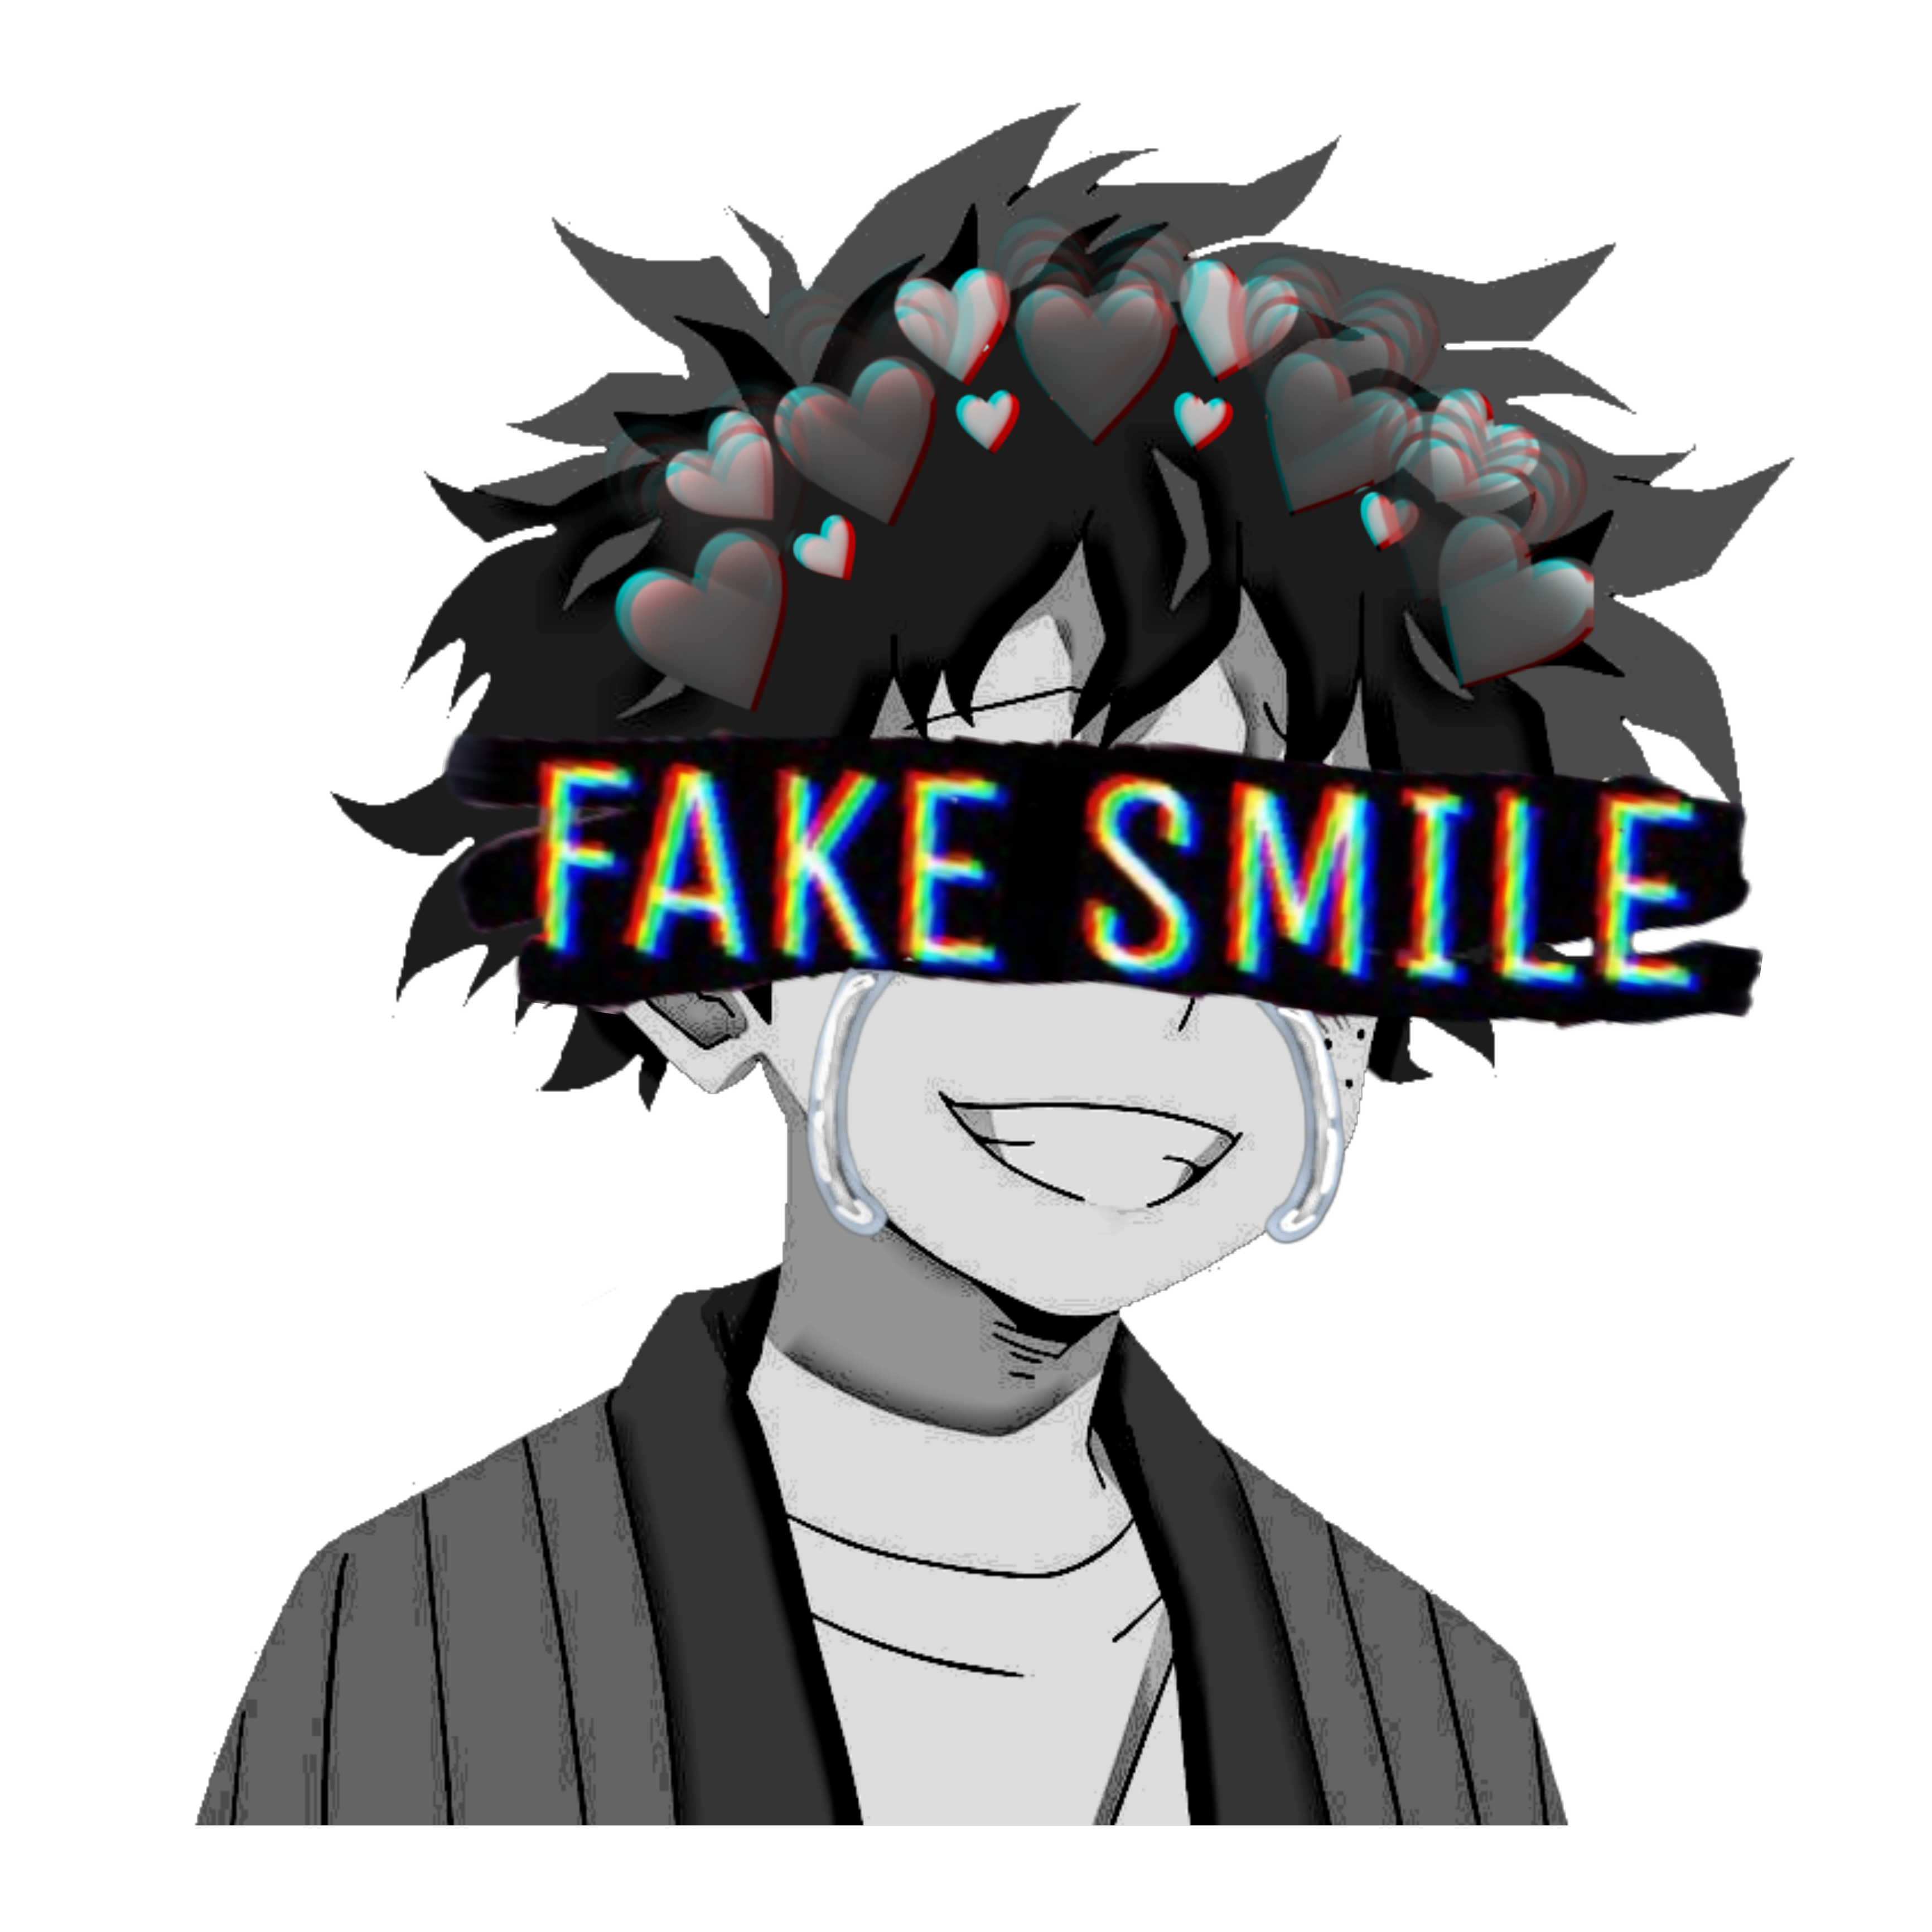 Fake Smile  Single by Yoake no Wadachi  Spotify